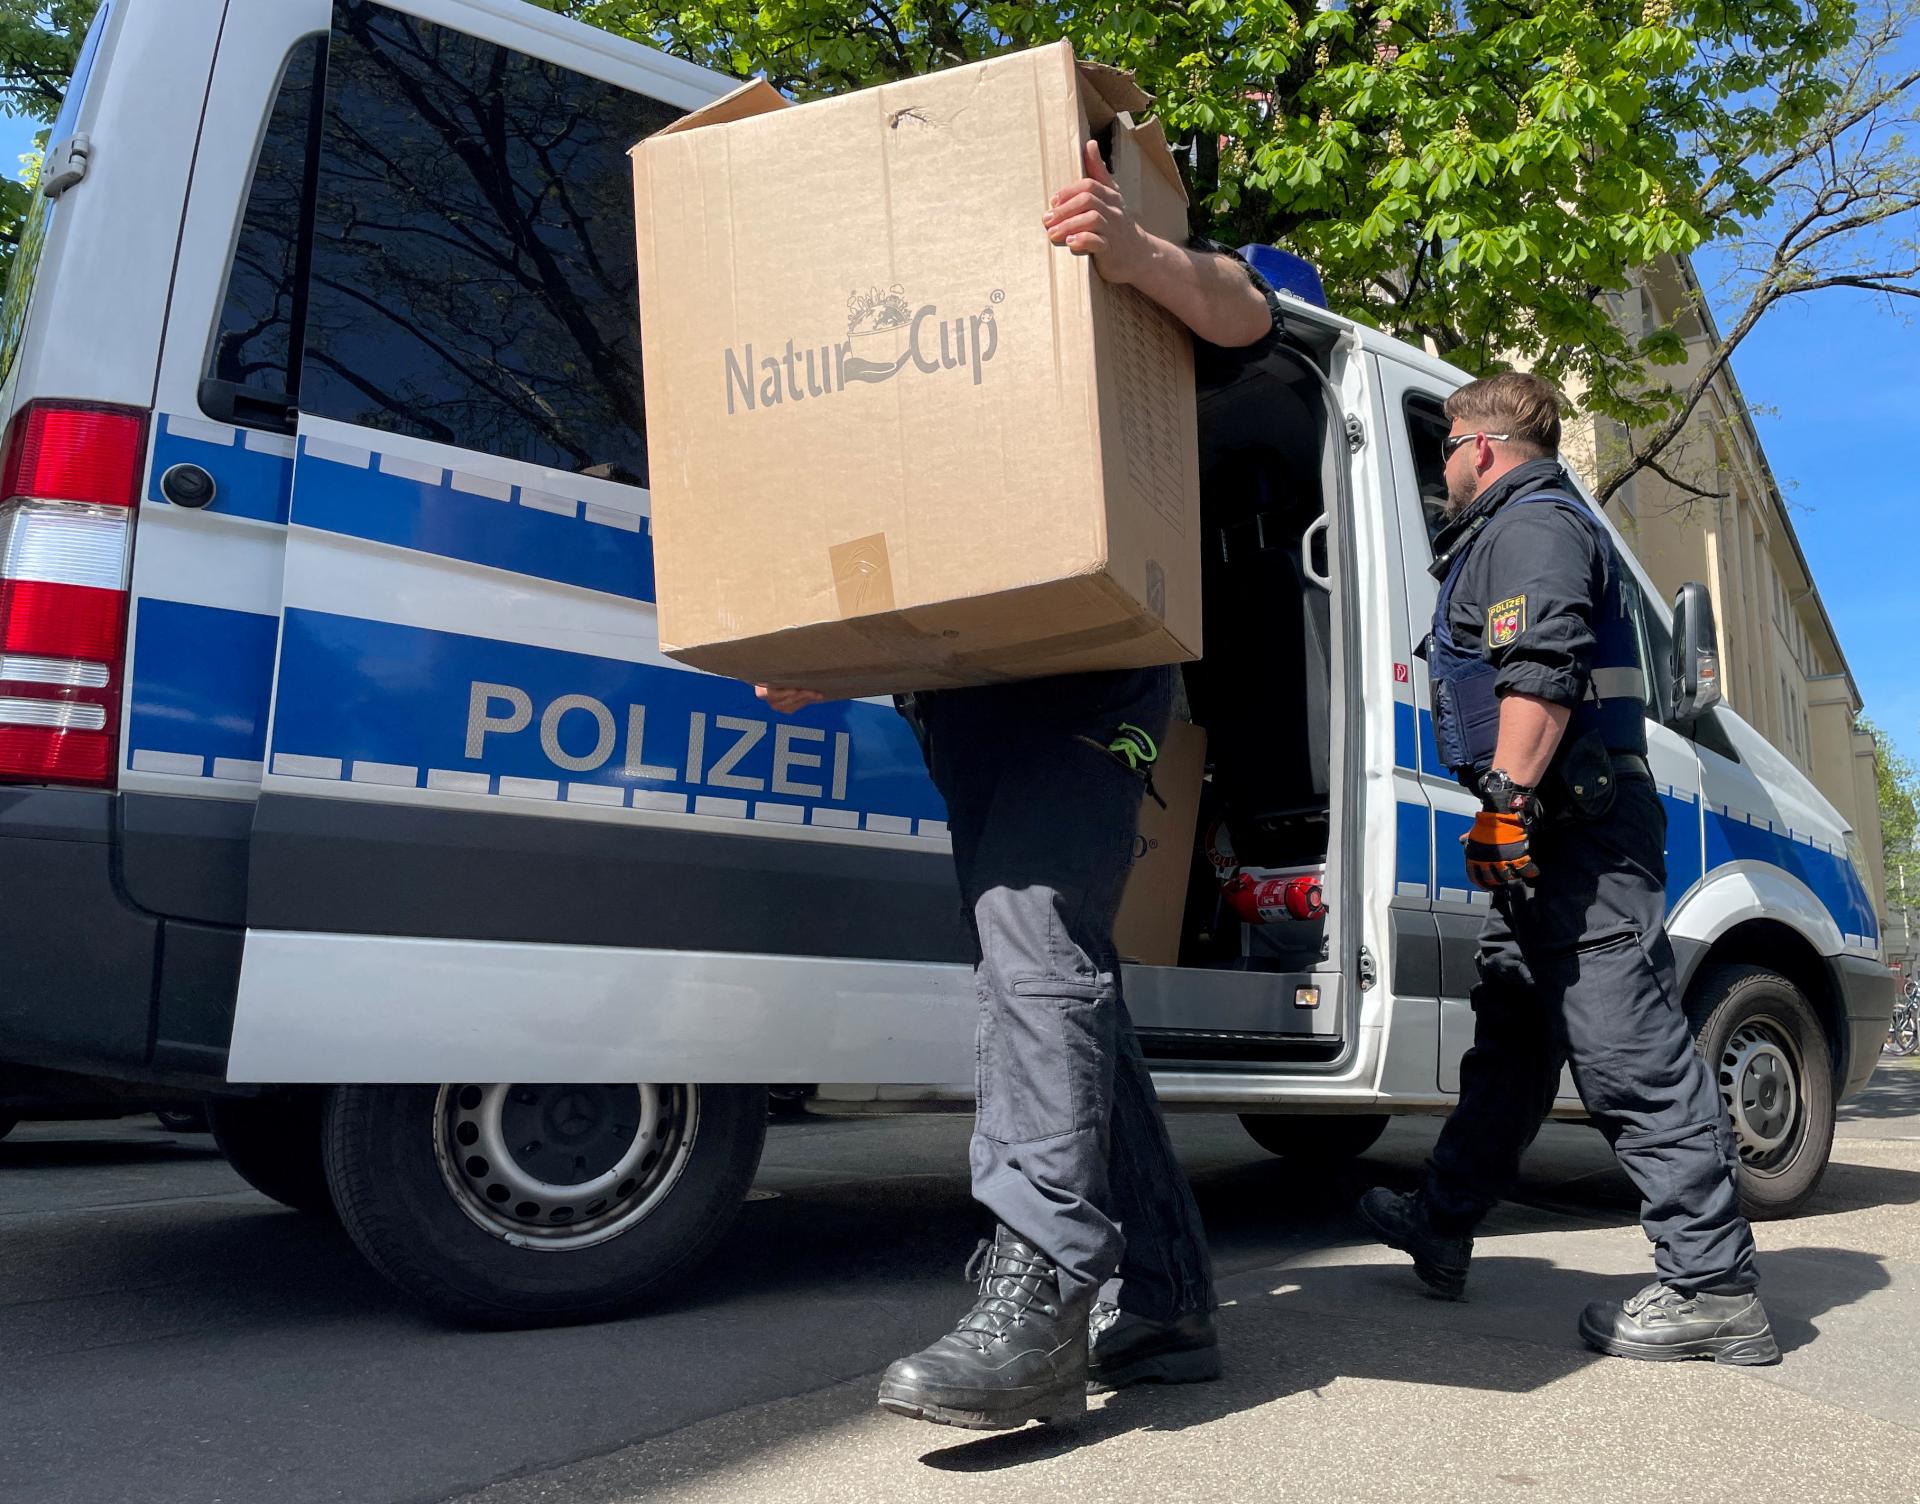 Policajná akcia Karpat sa týka miliónového podvodu s eurofondmi v pivovare, vyšetrujú štátnych úradníkov